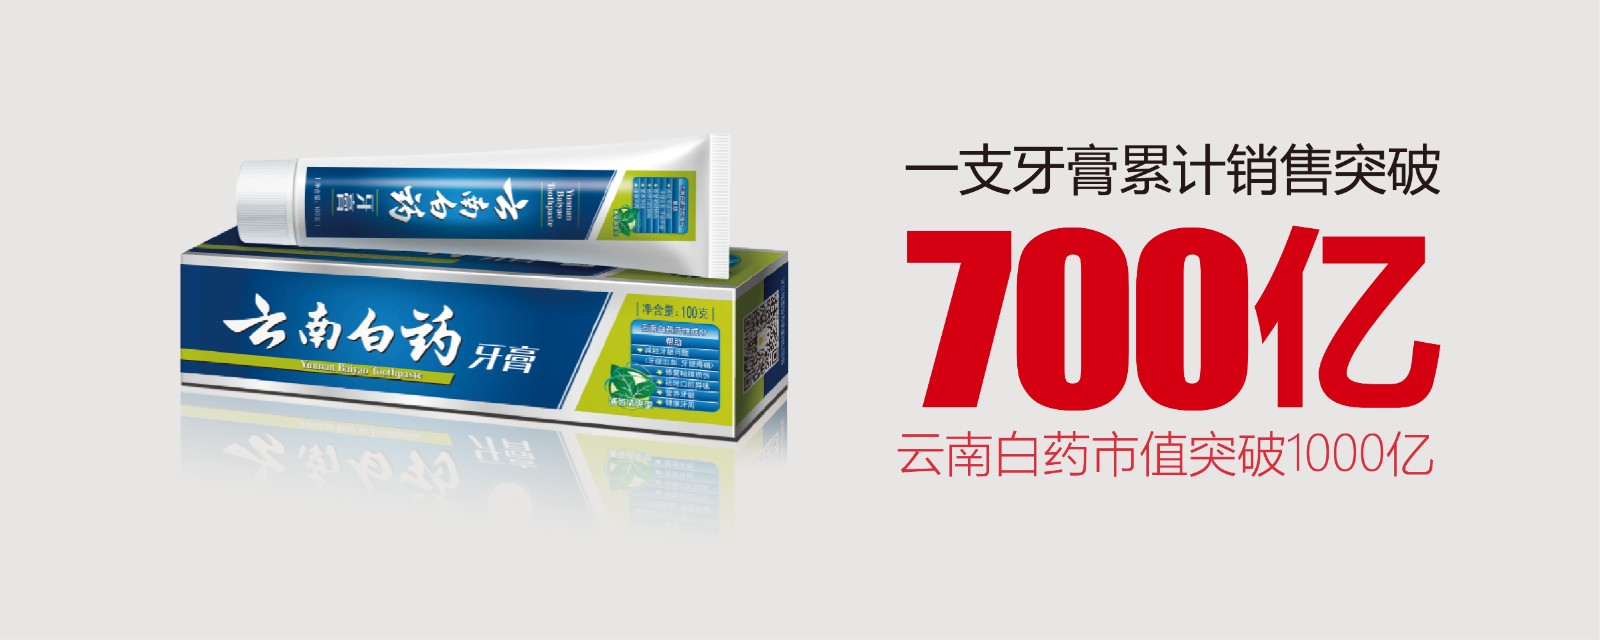 为民族品牌扬威：一支牙膏的700亿产业跨界突破